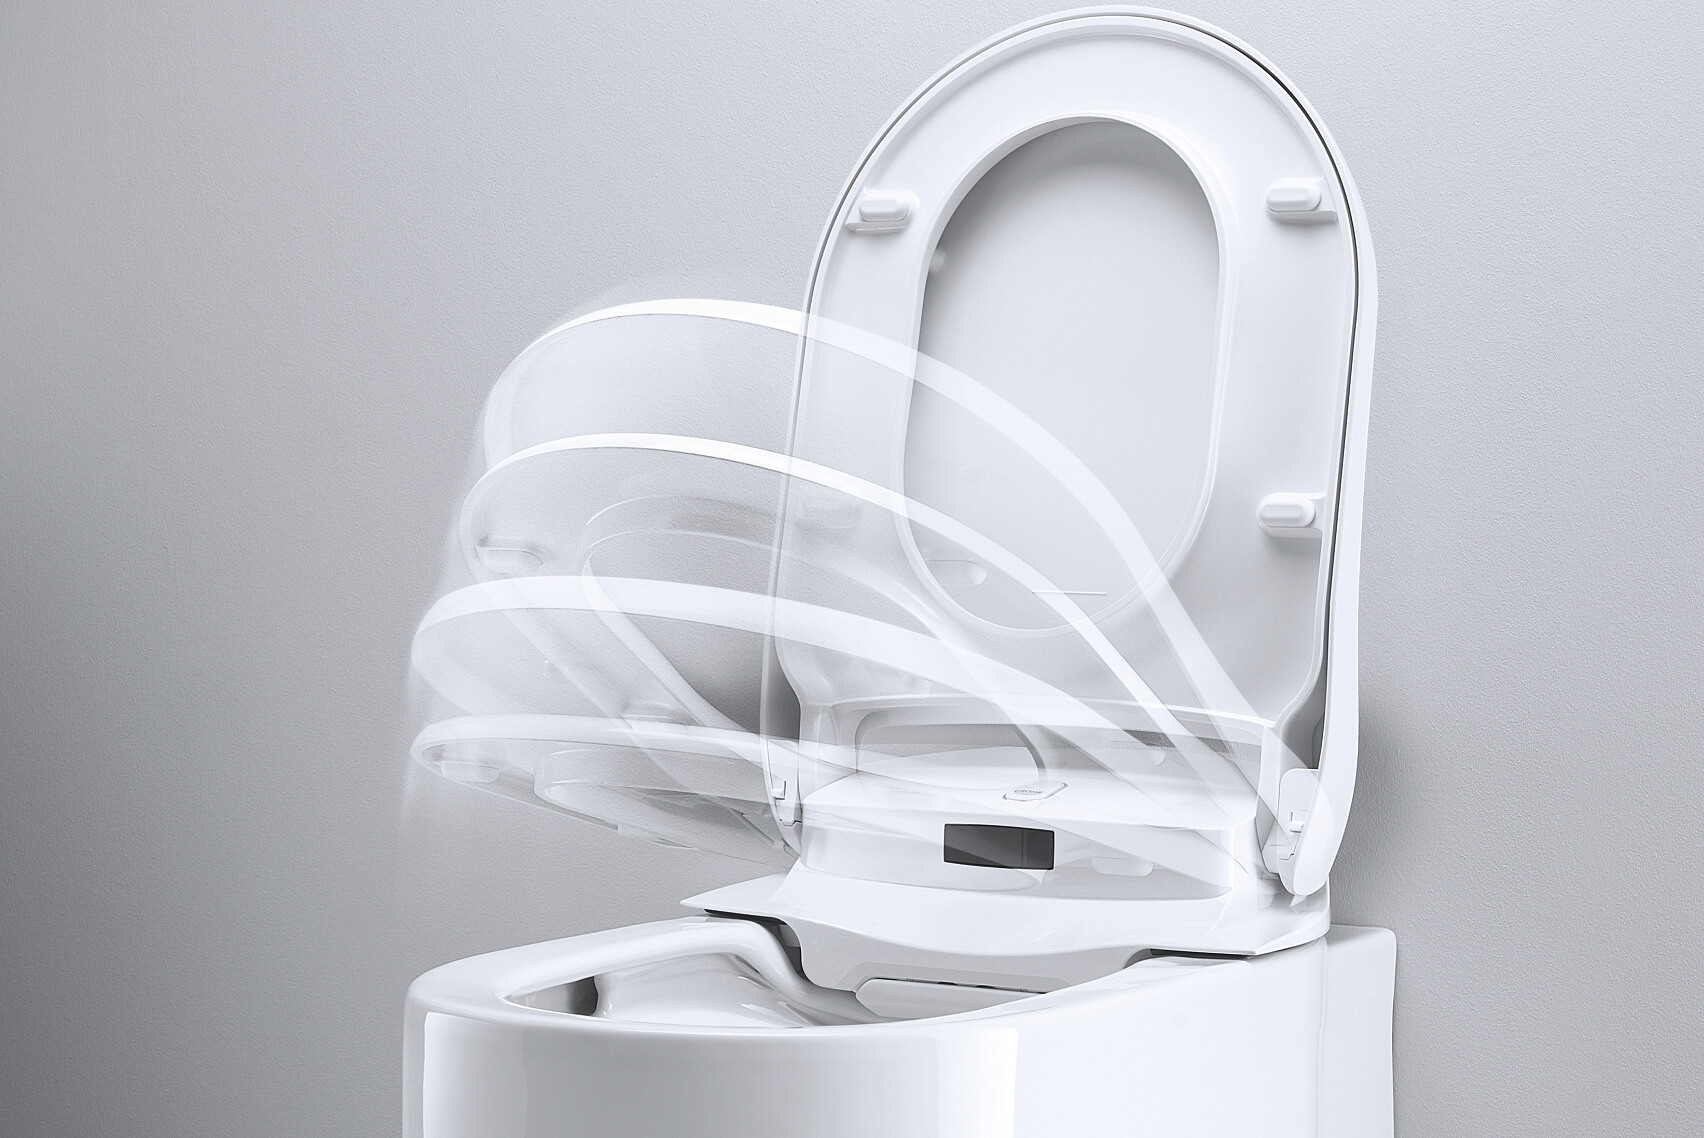 Le WC Lavant de Grohe : Sensia Arena. Innovation intégrée au Concept YRYS.